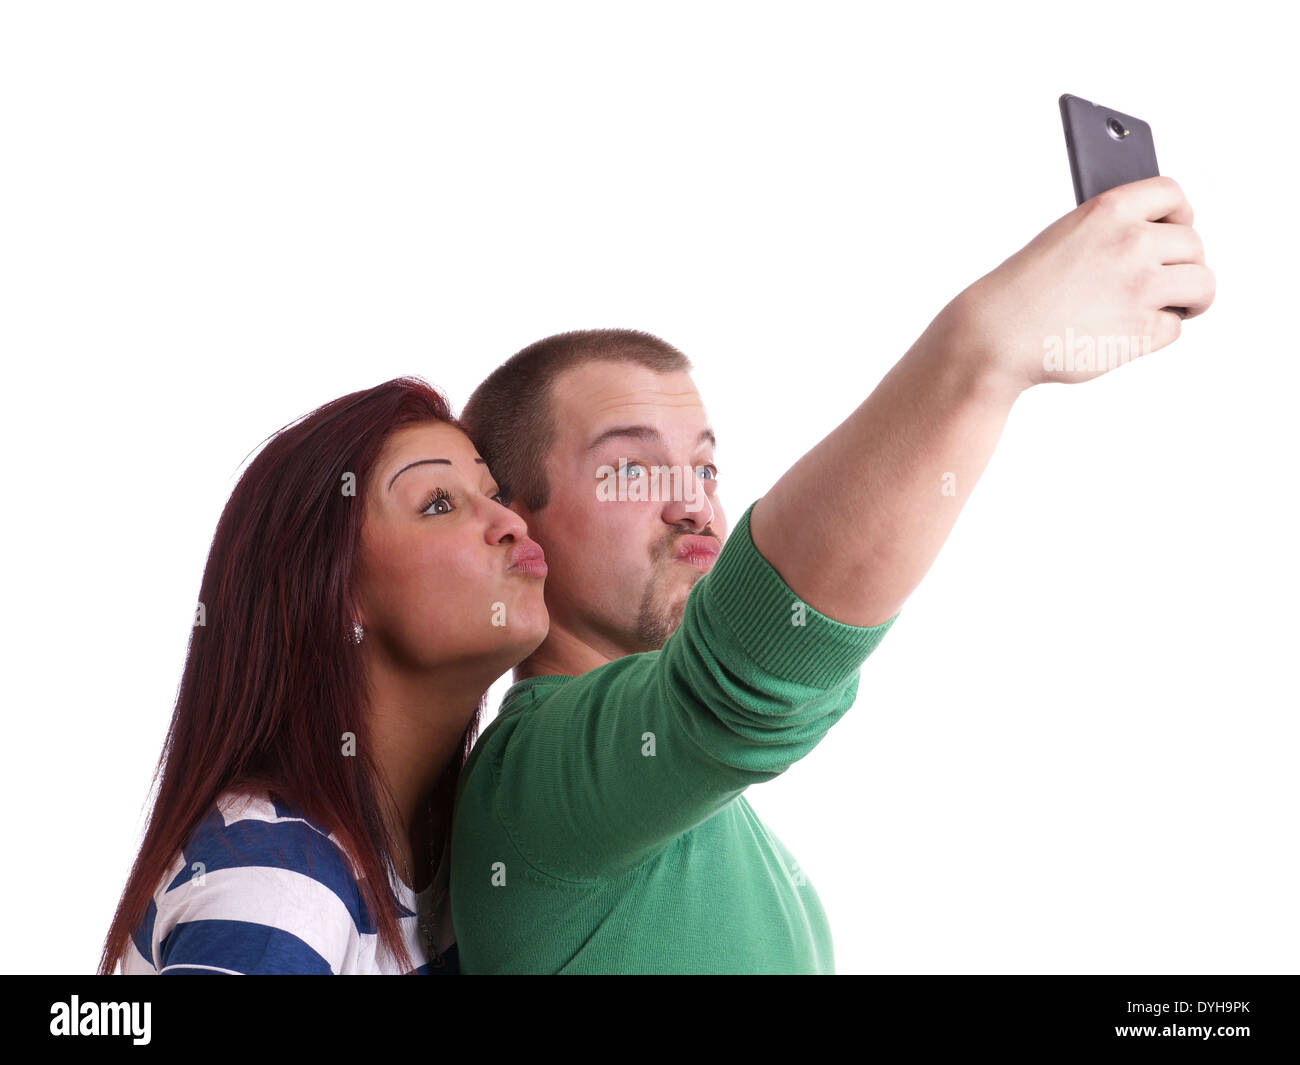 Silly coppia giovane rendendo faccia d'anatra tenendo selfie con smart phone fotocamera Foto Stock